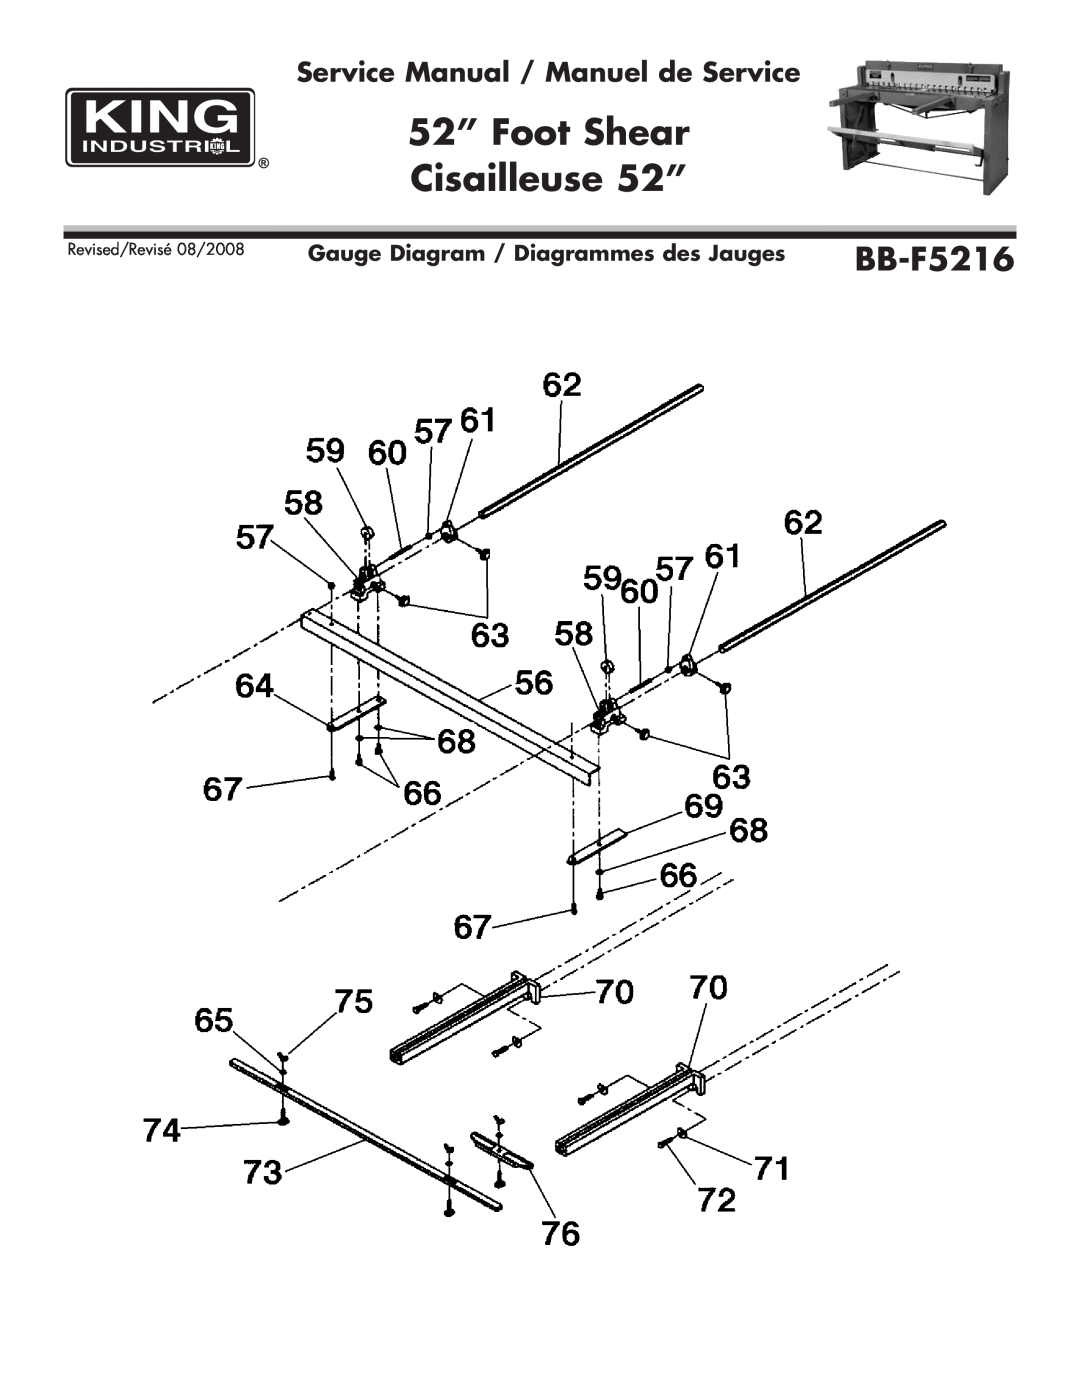 King Canada BB-F5216 Gauge Diagram / Diagrammes des Jauges, 52” Foot Shear Cisailleuse 52”, Revised/Revisé 08/2008 